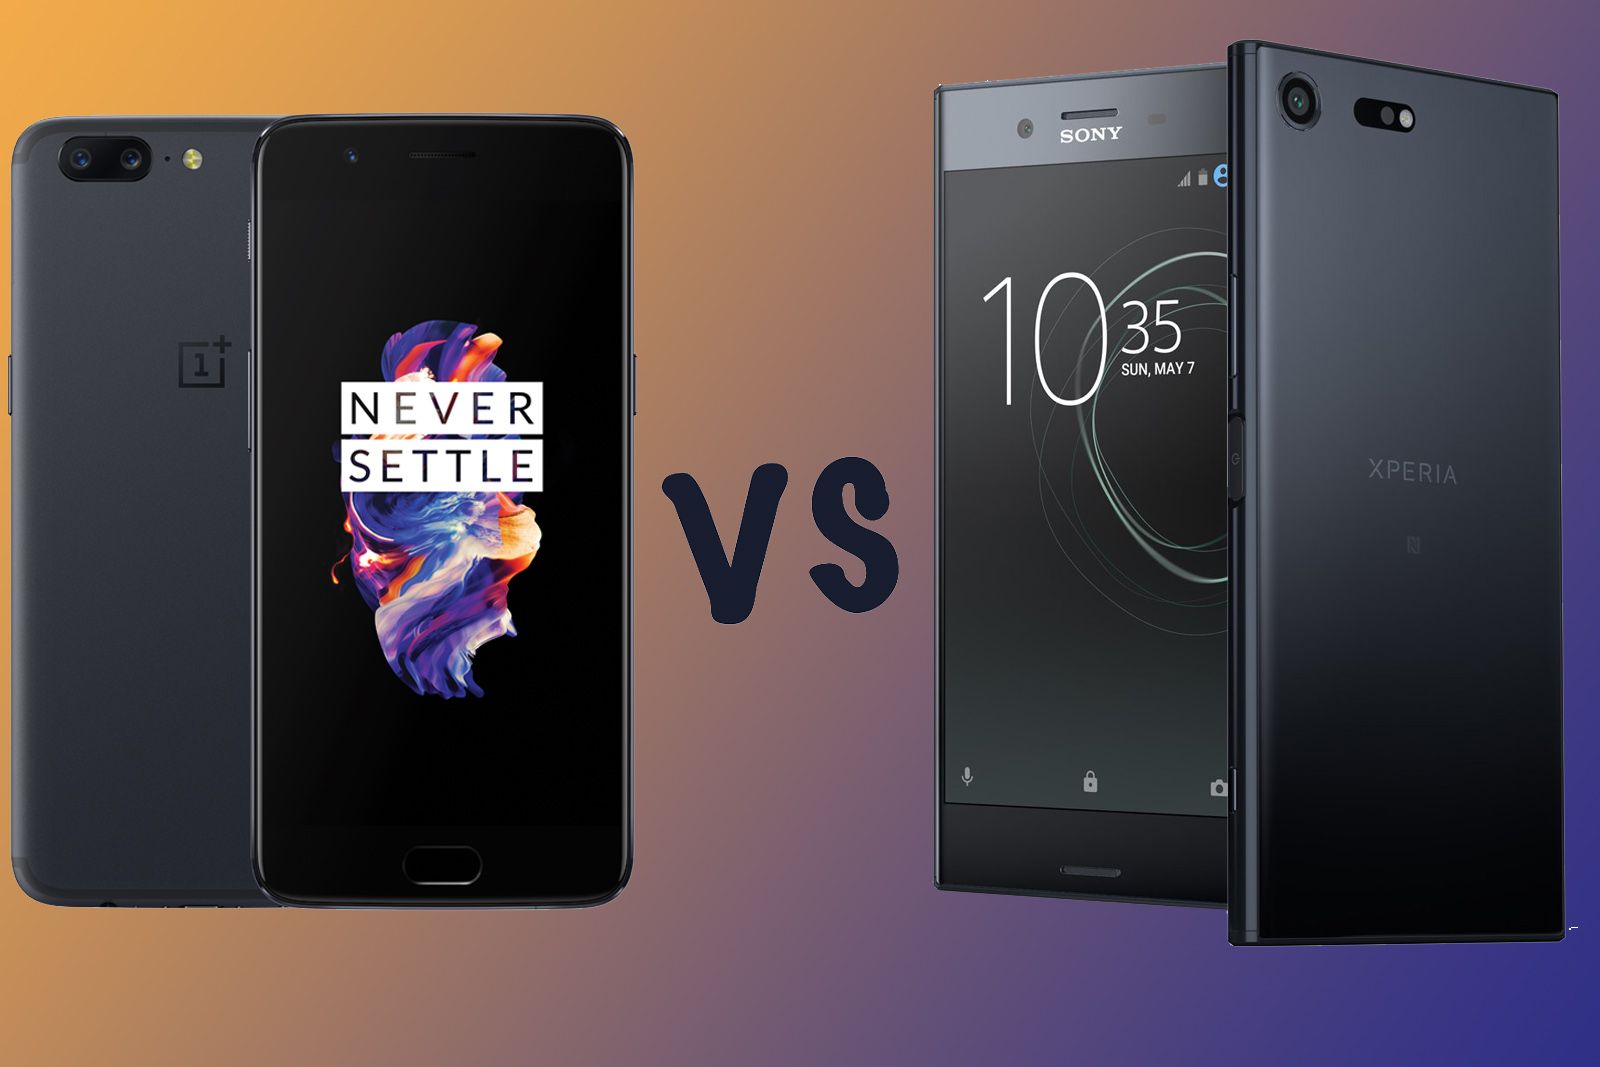 OnePlus 5 vs Sony Xperia XZ Premium image 1